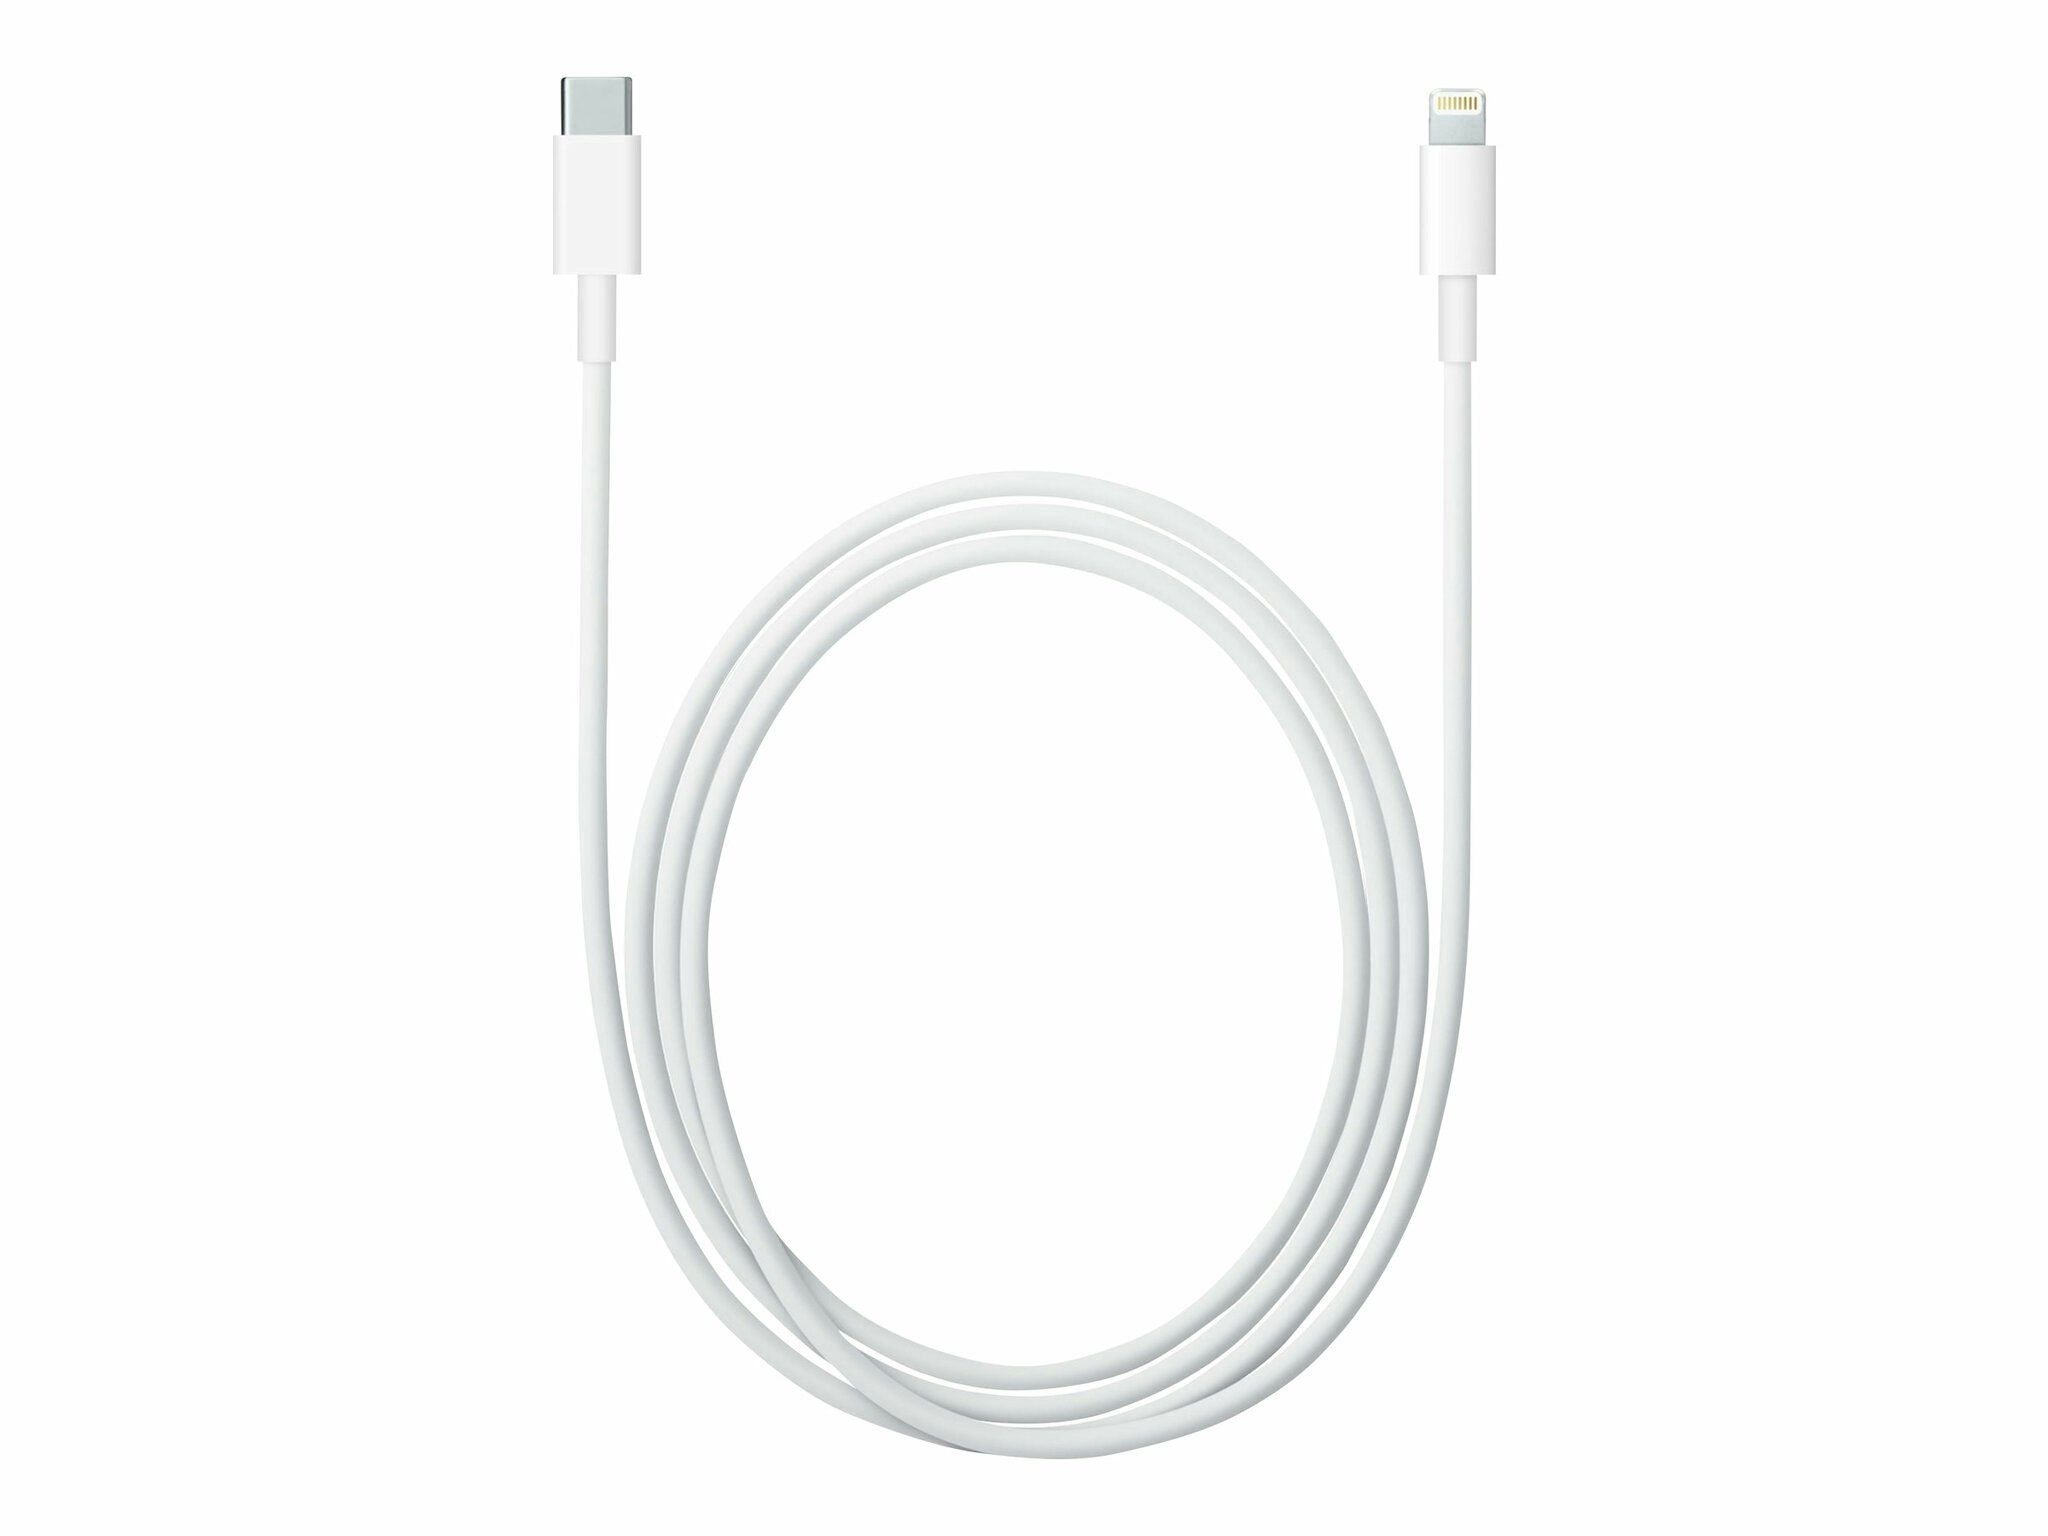 Äkta Apple usb-c till Lightning-kabel 1m